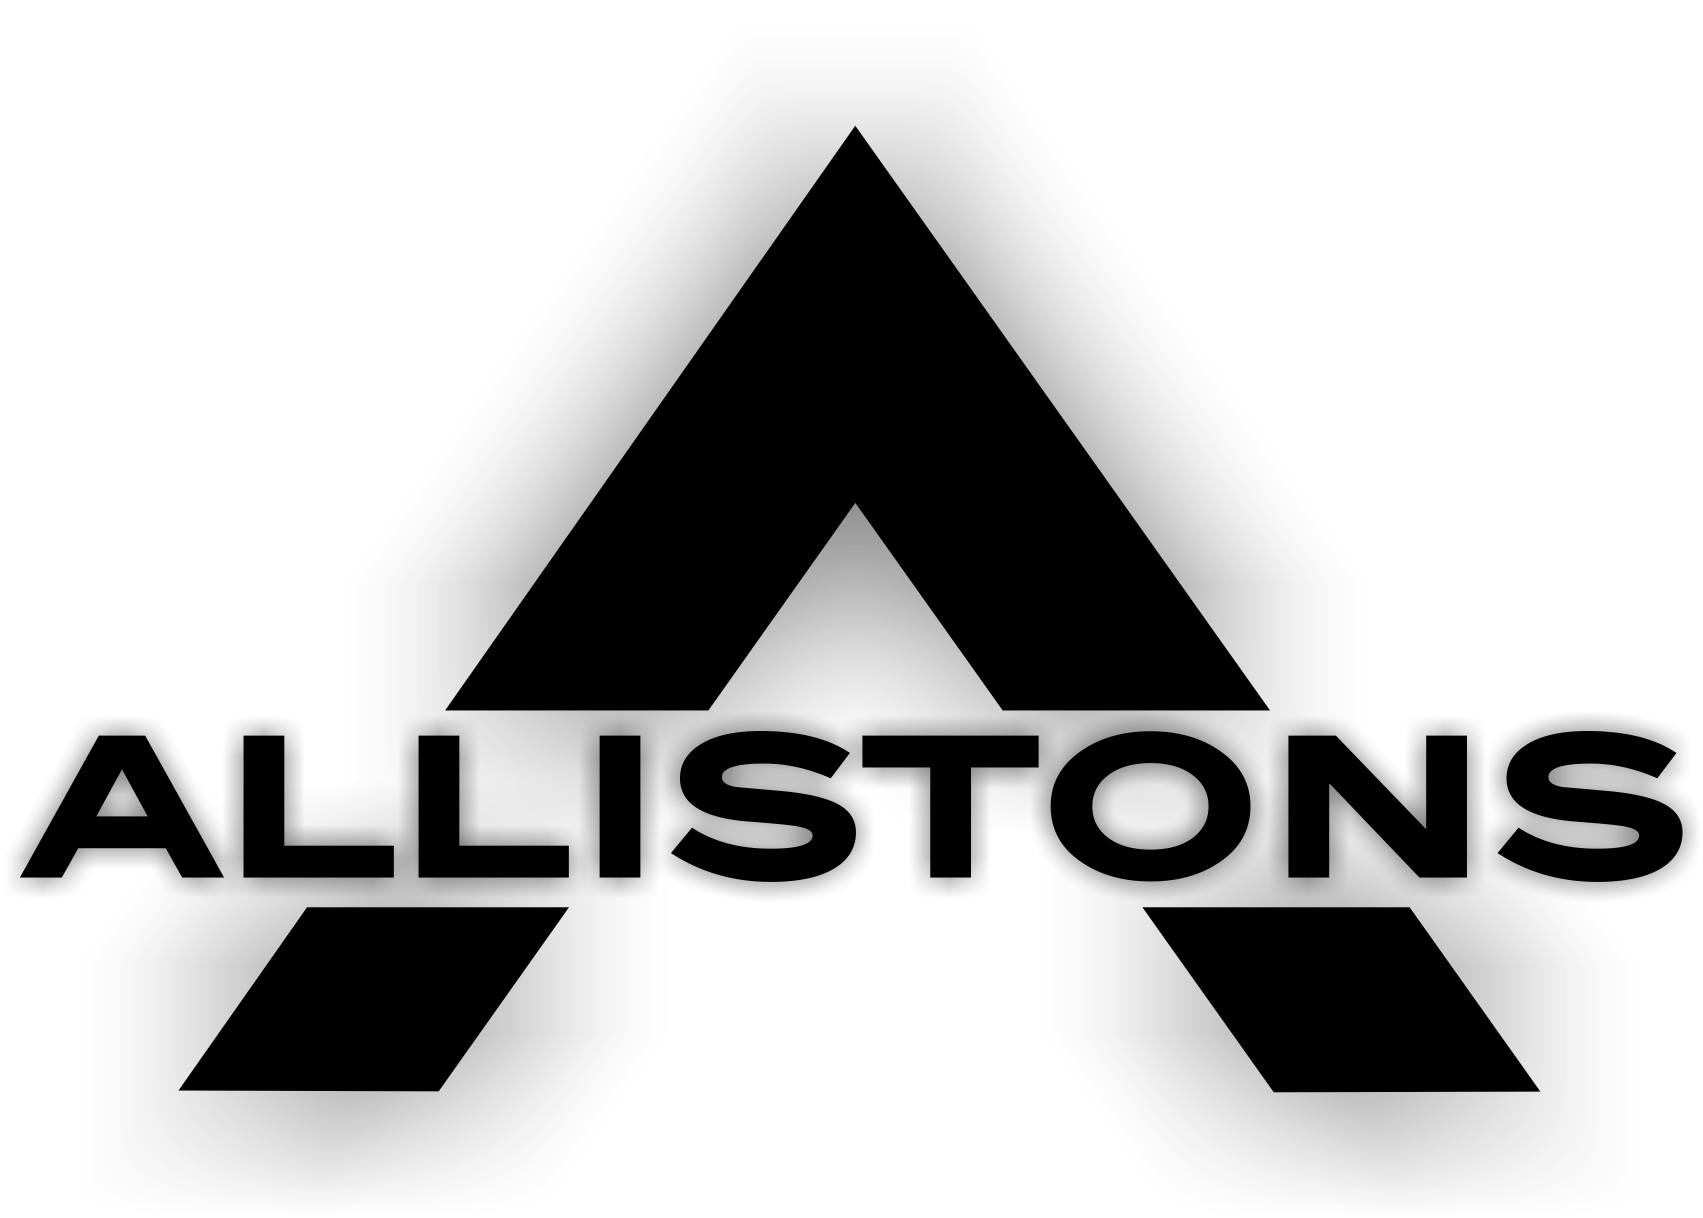 Allistons's Logo